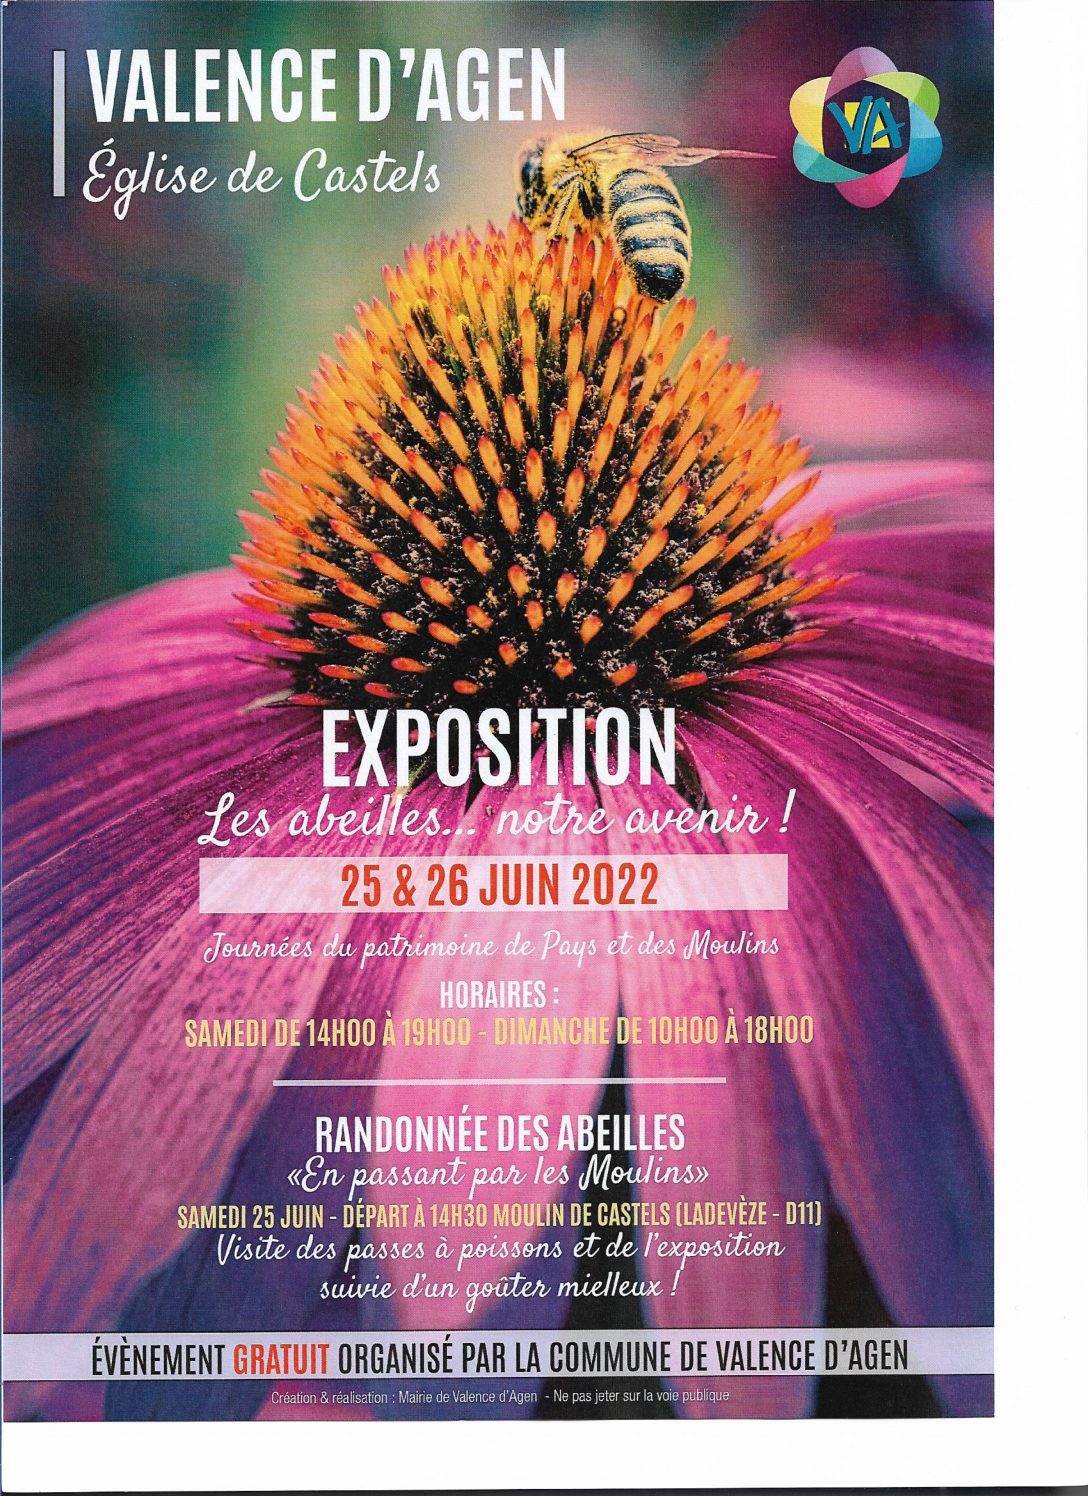 Expo “Les abeilles, notre avenir”